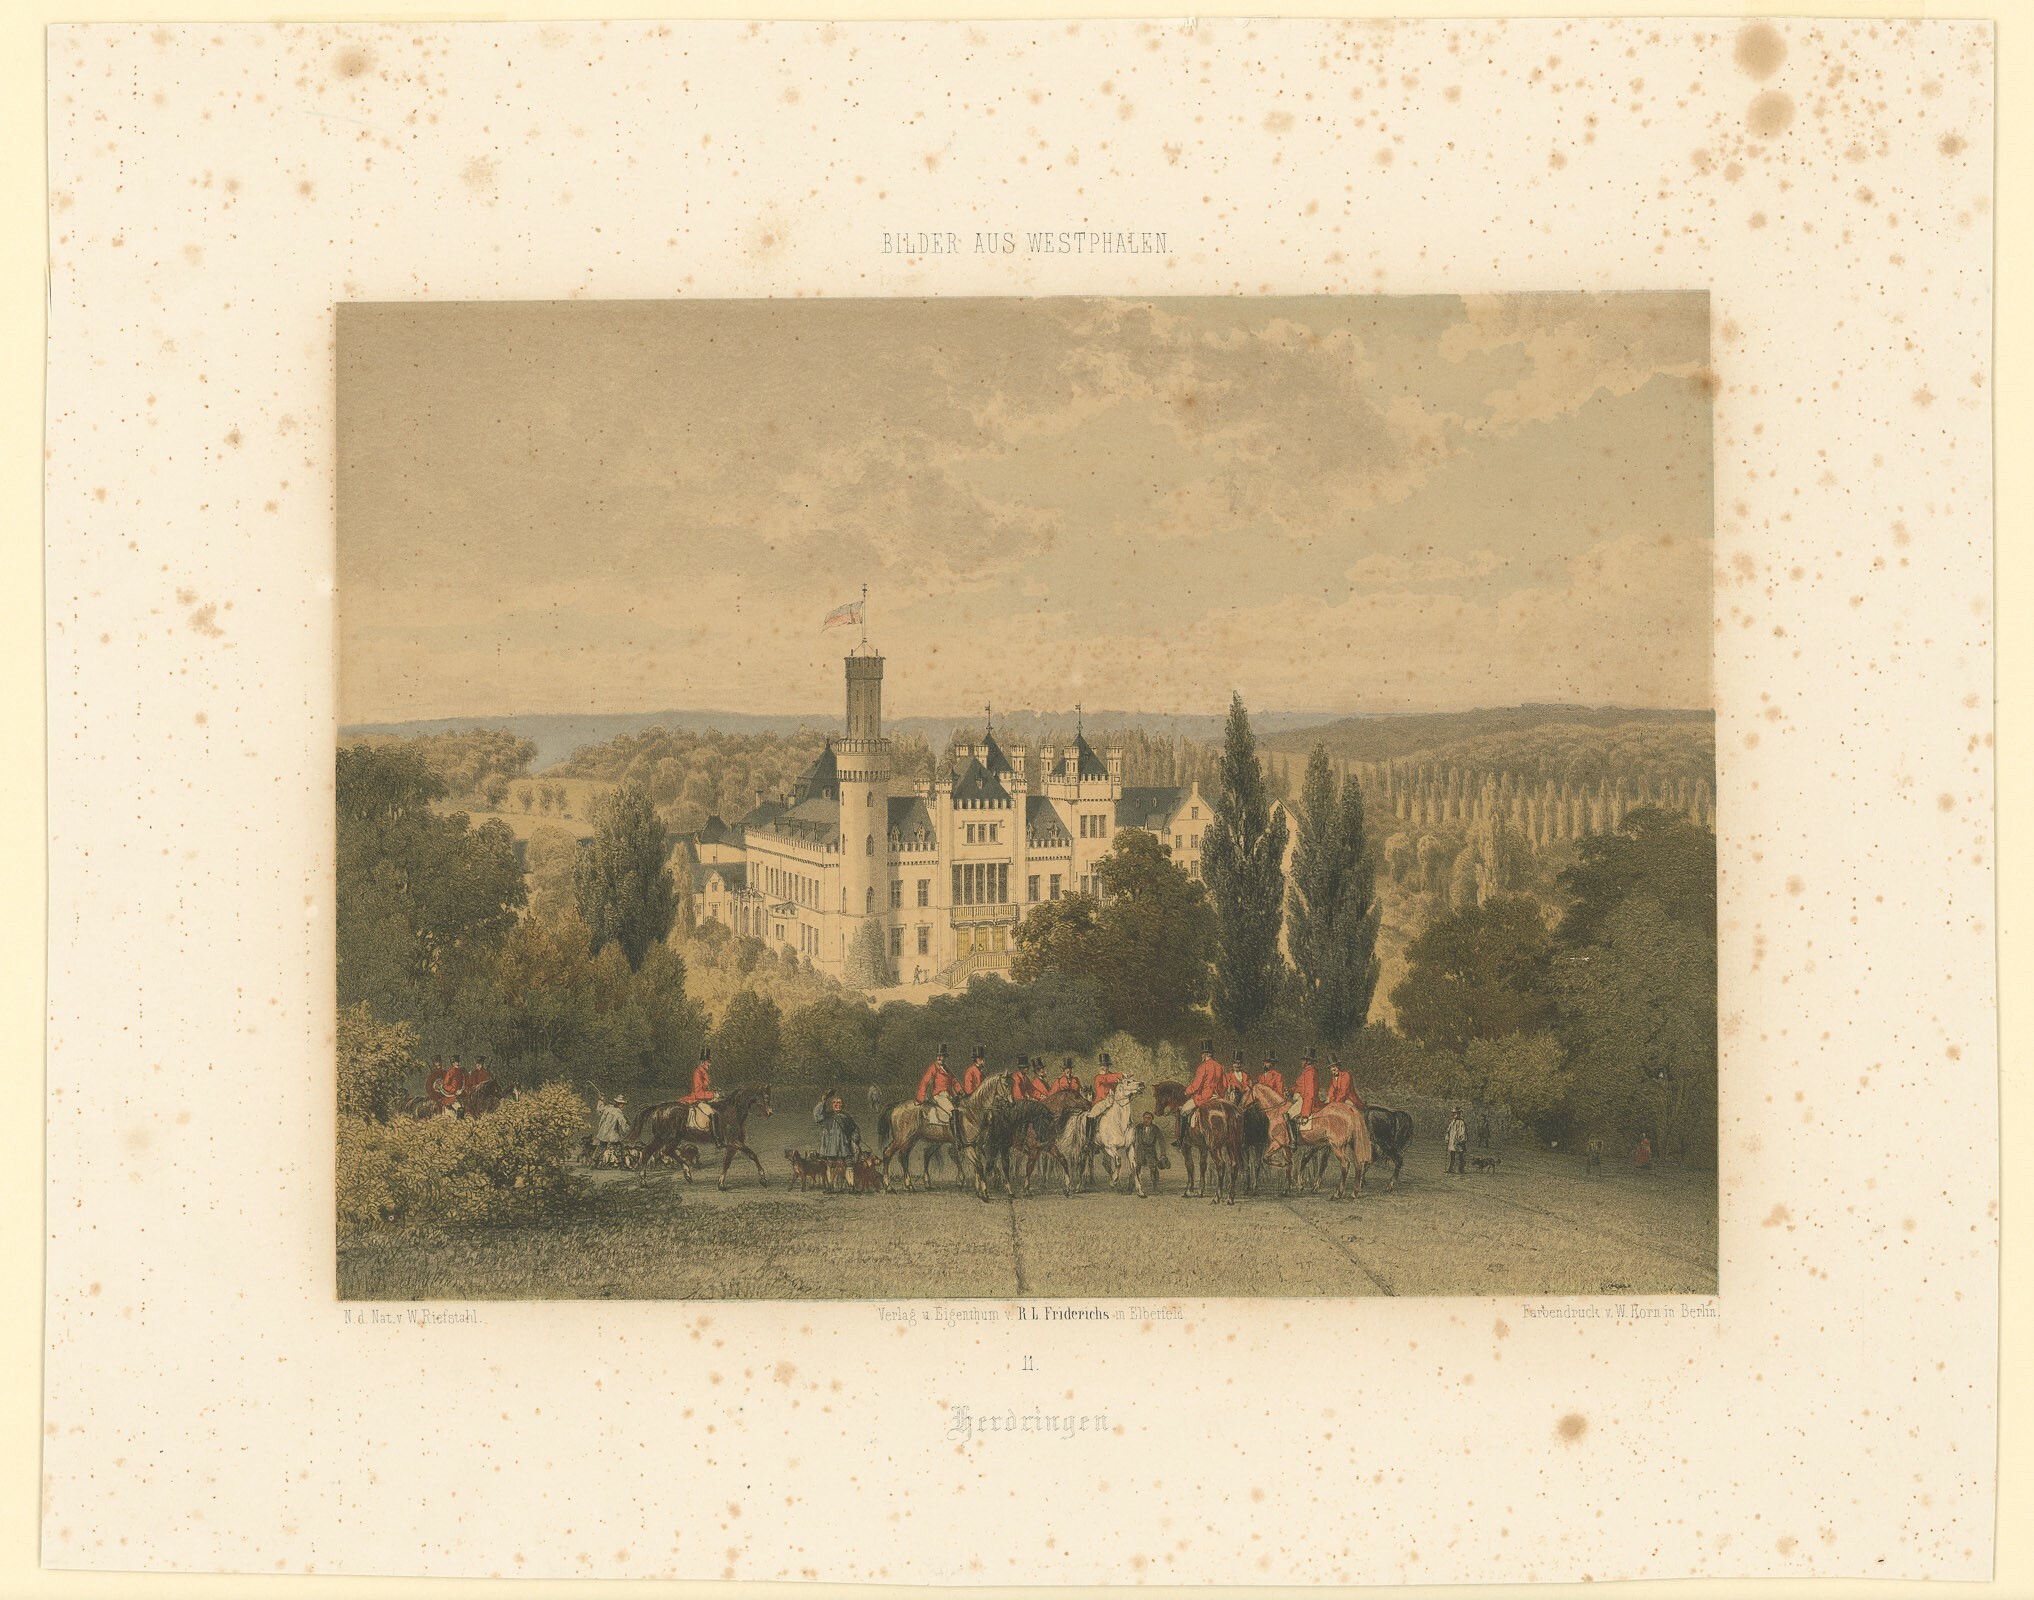 Farblithografie mit Ansich von Schloss Herdringen (Museen Burg Altena CC BY-NC-SA)